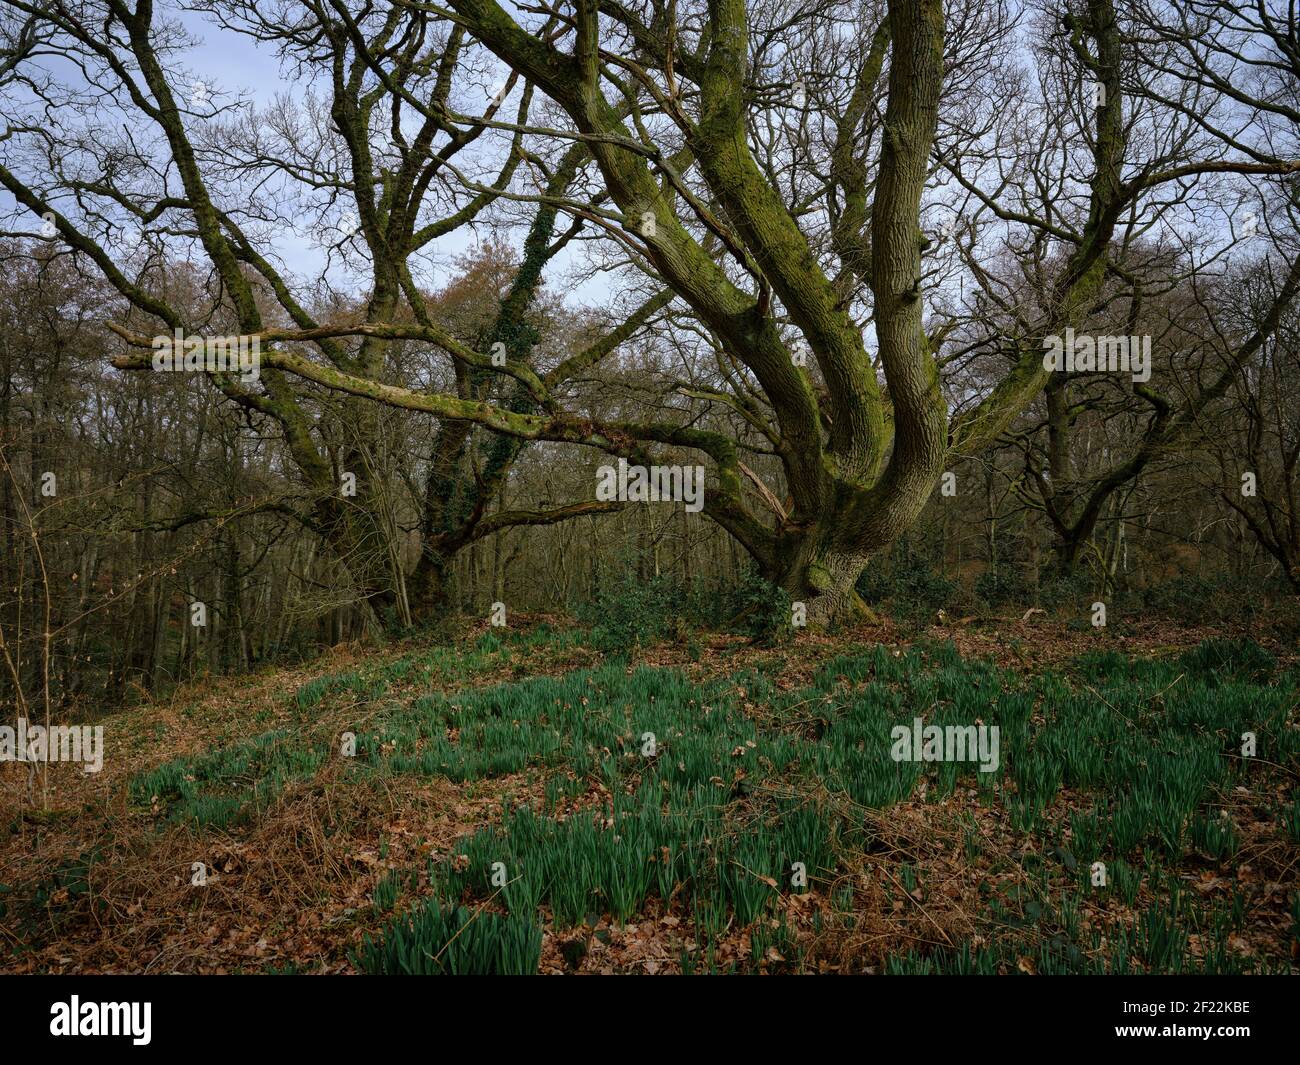 Due grandi alberi circondati da alberi più piccoli in un bosco con nuova crescita che si infrangono attraverso il terreno, mostrando che la primavera è iniziata, Greenham Common Foto Stock